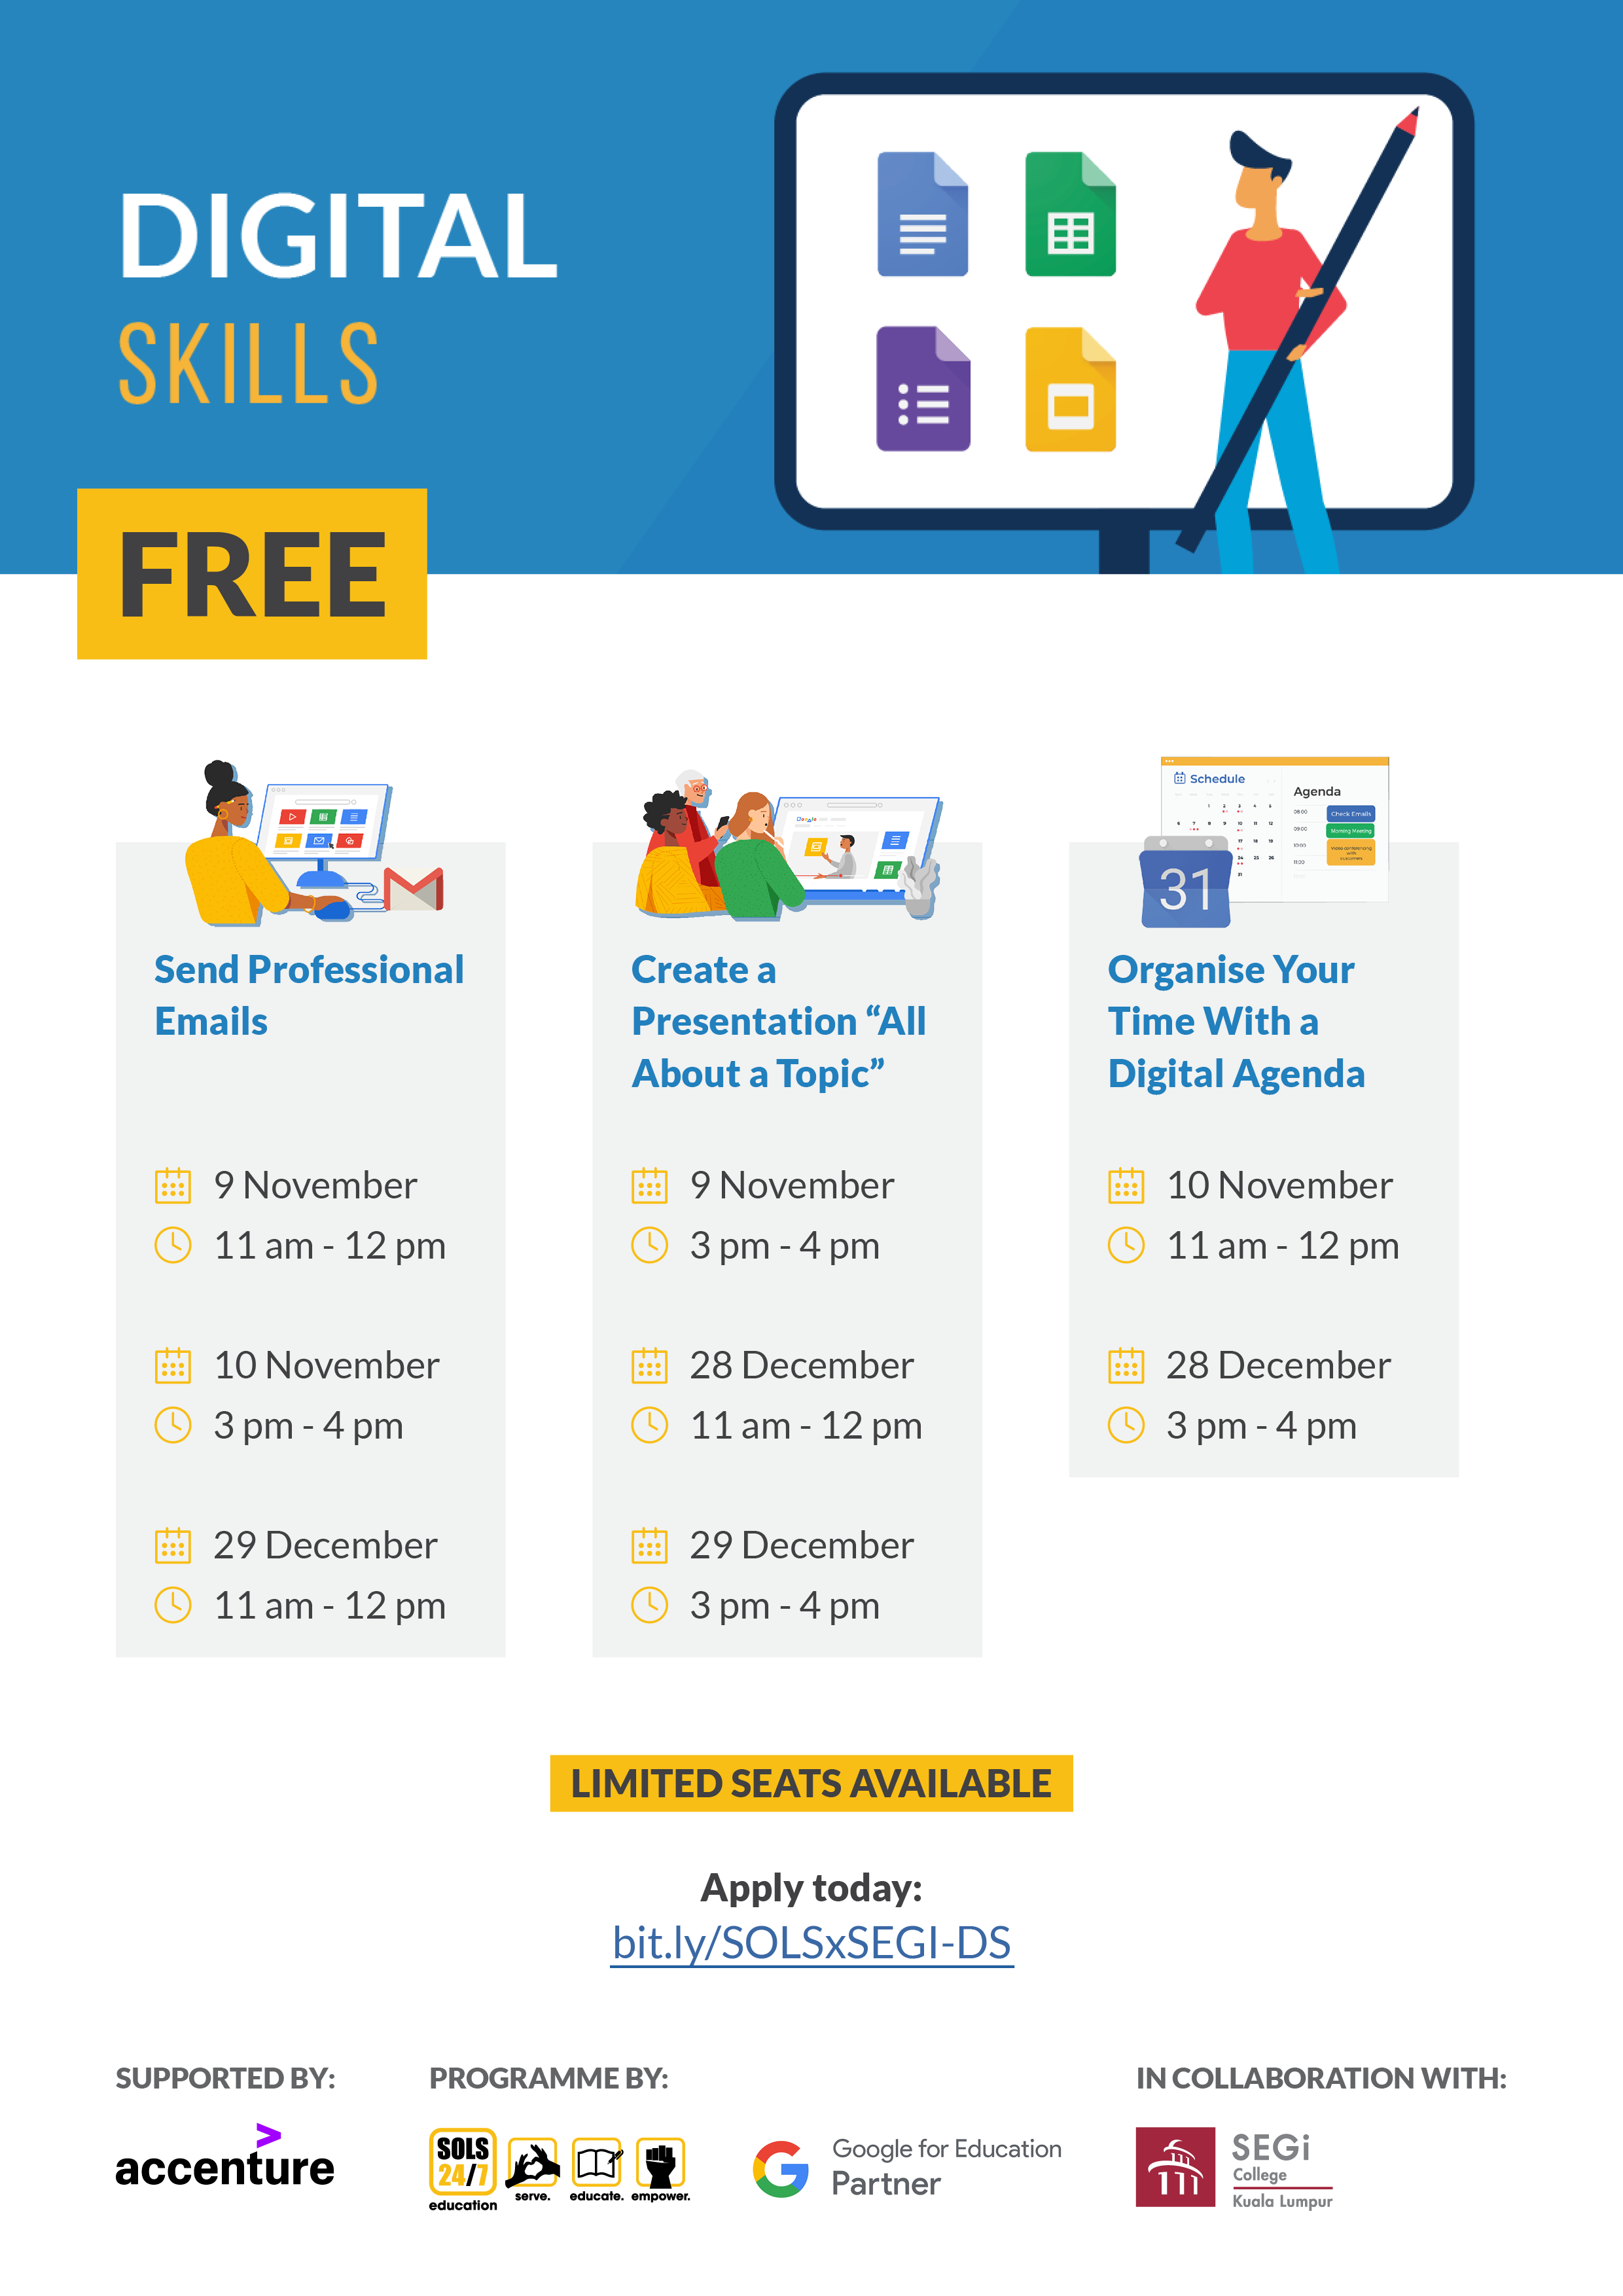 SOLS Education Poster on Digital Skills Workshops